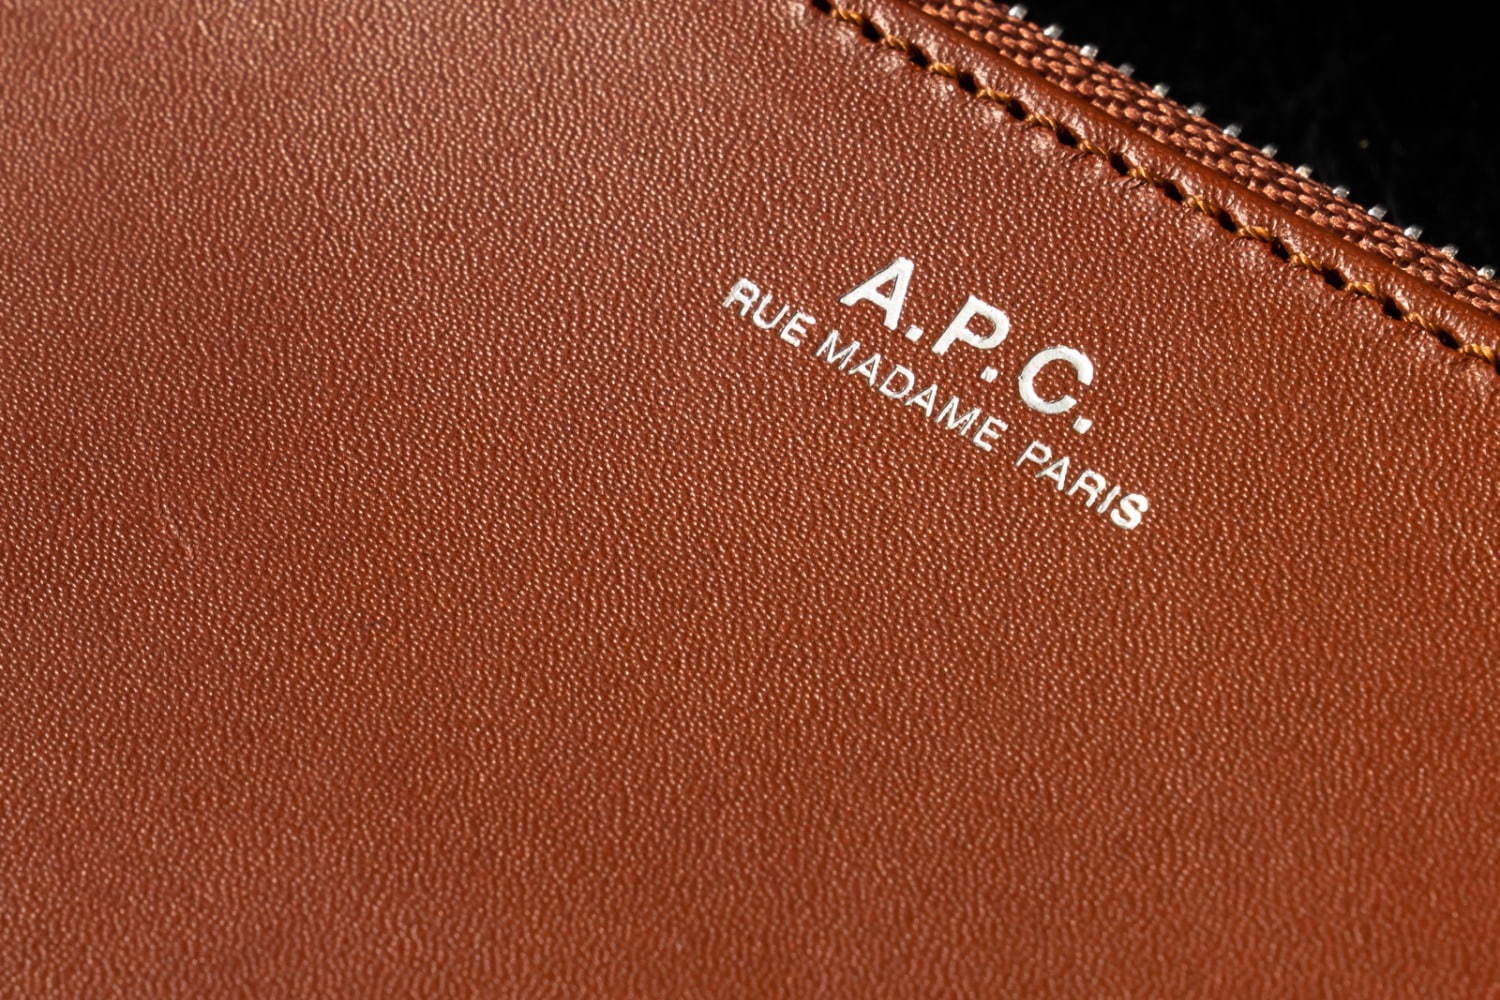 A P C おすすめウォレット5選 シンプルなa P C 財布がなぜ人気 良コスパ上質レザーを比較 ファッションプレス